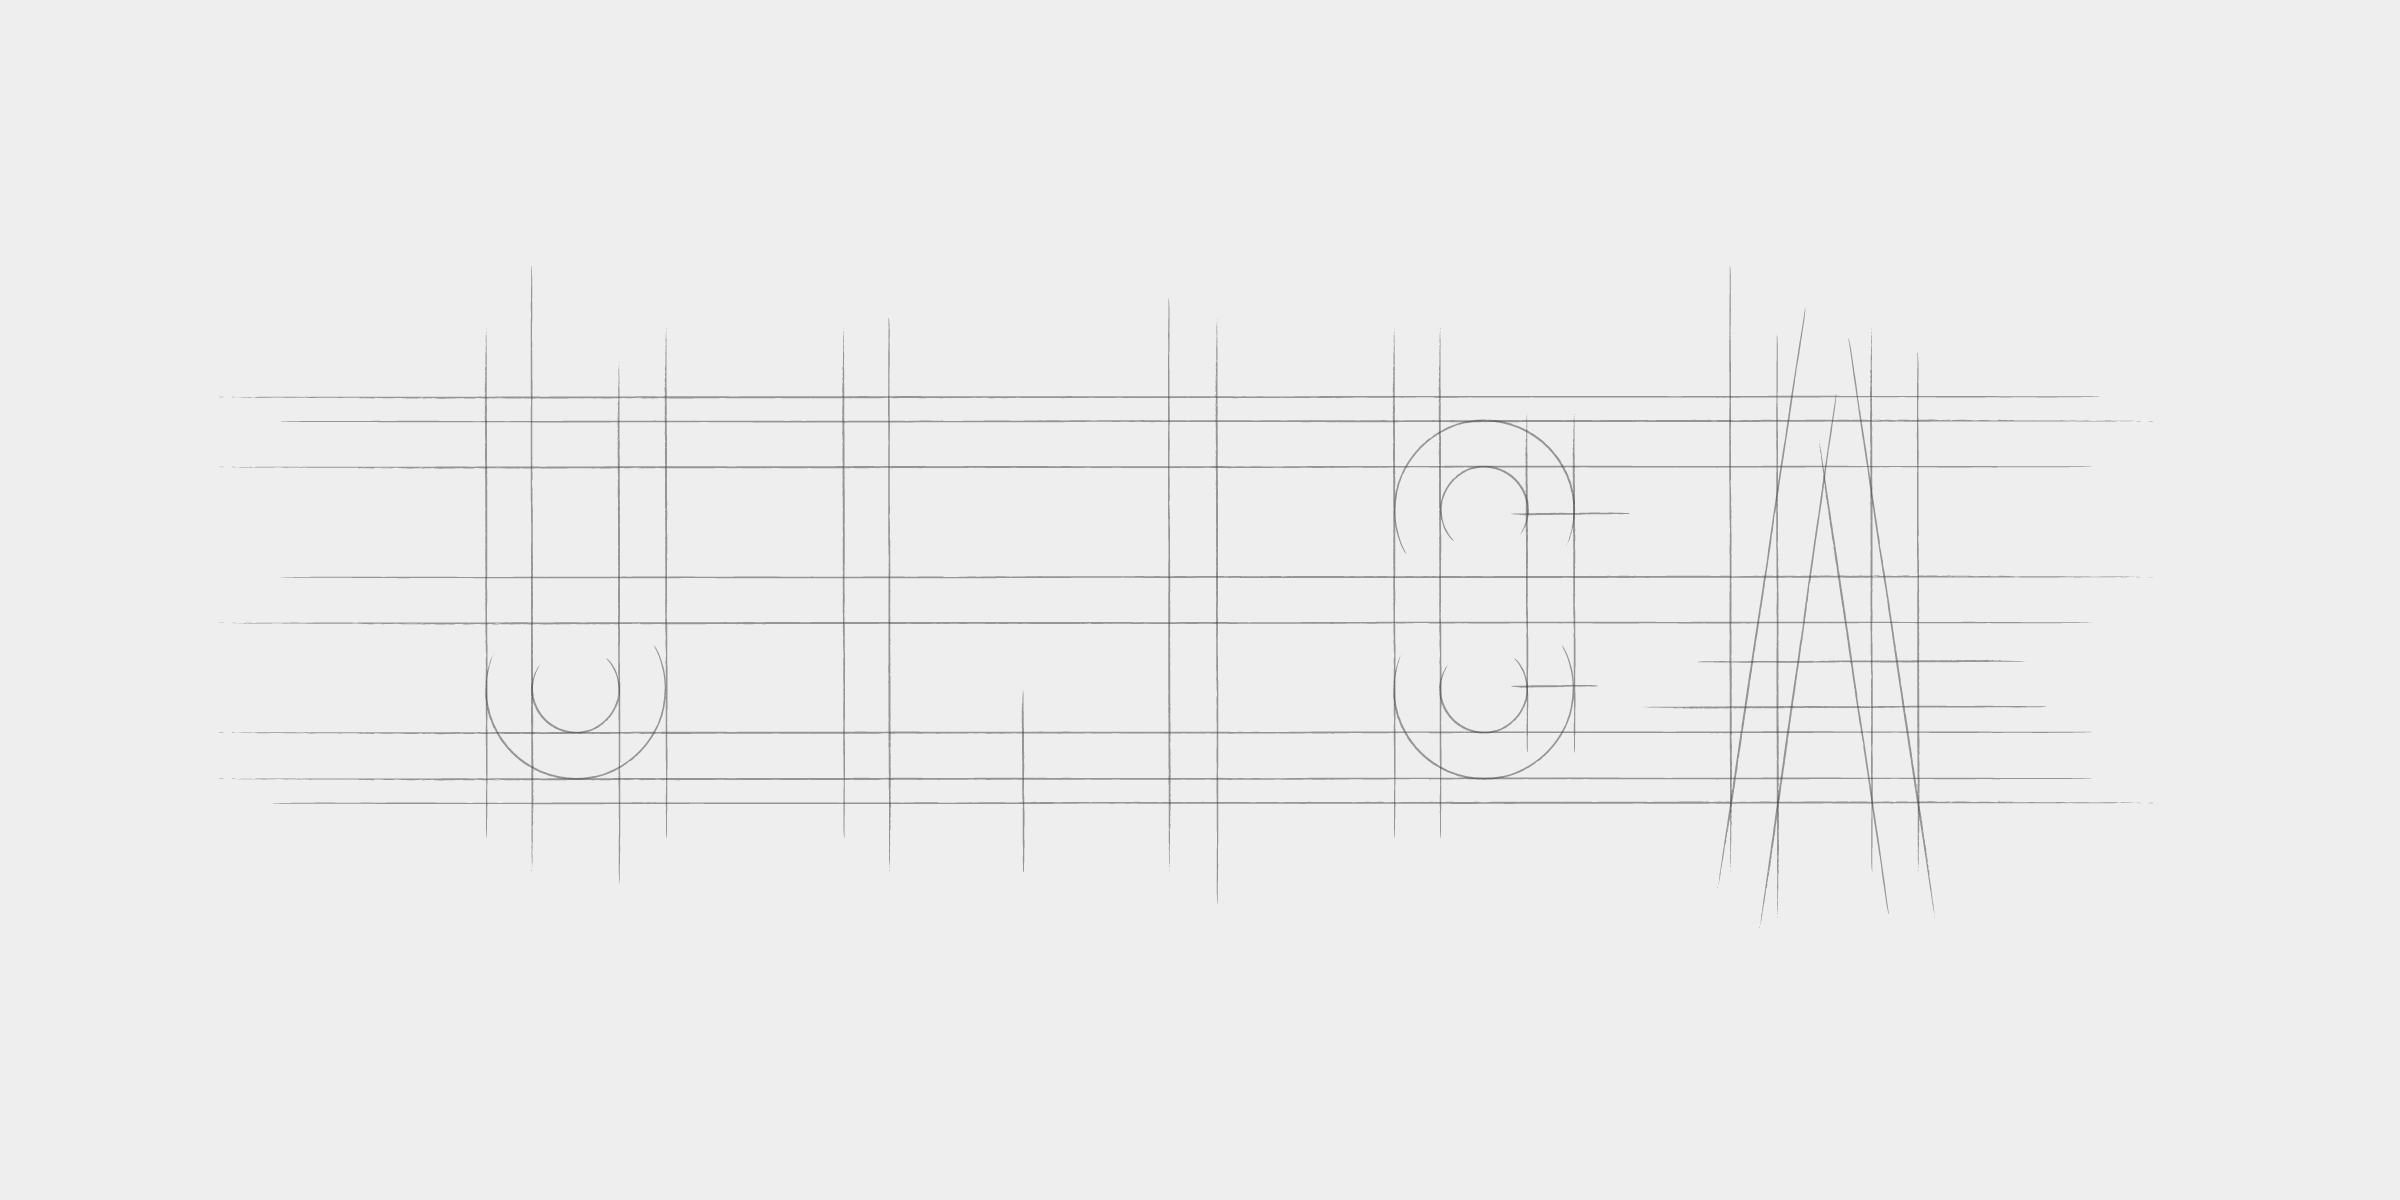 Narysovaný nápis “ULICA” pred vyrezaním do šablóny.
https://manual.setuptype.com/